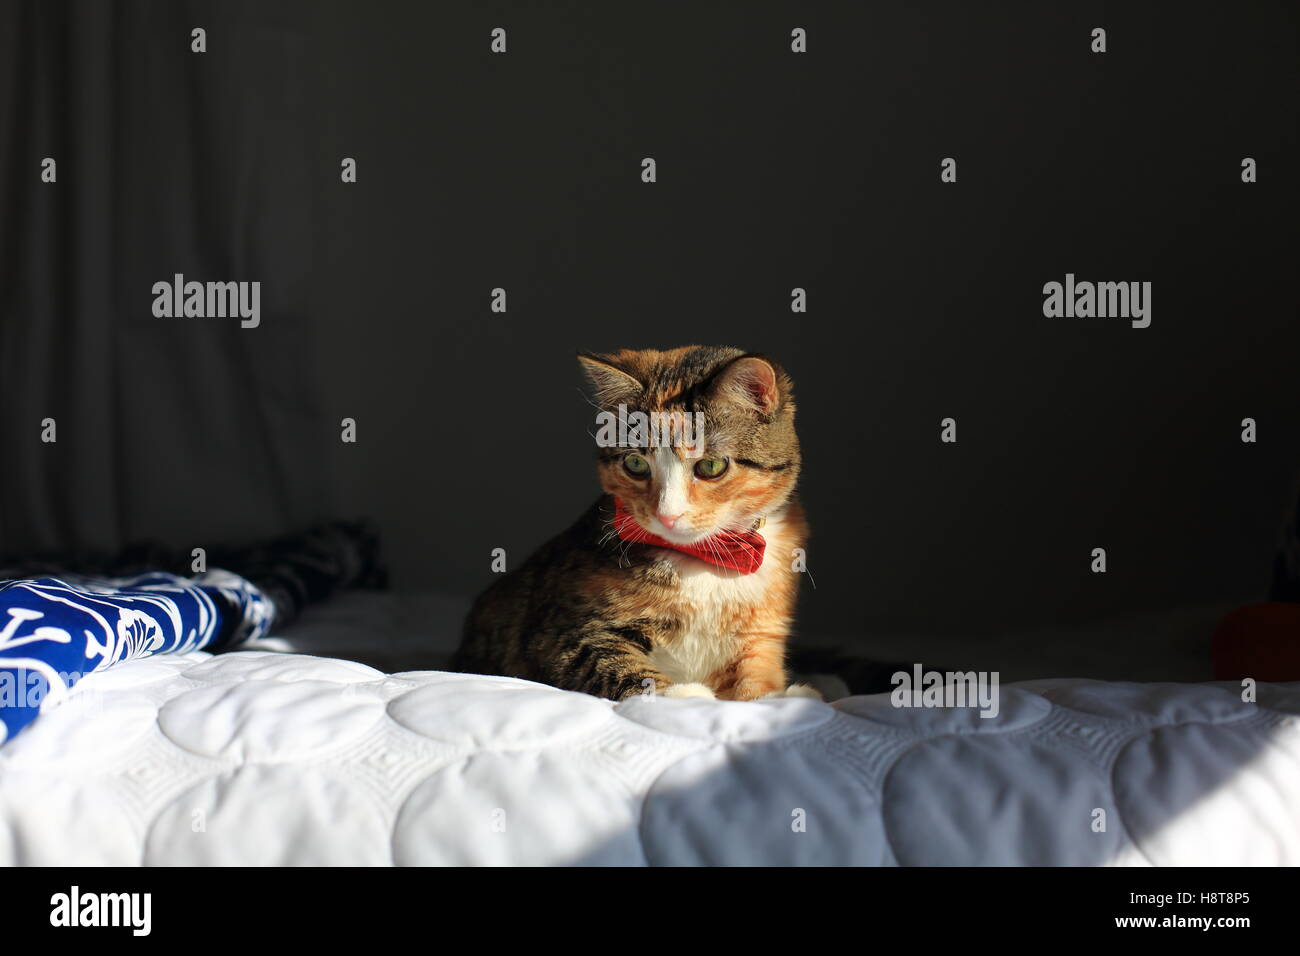 Una naranja, negro y blanco moteado housecat llevaba una pajarita descansa sobre una cama en una luz espectacular. Foto de stock